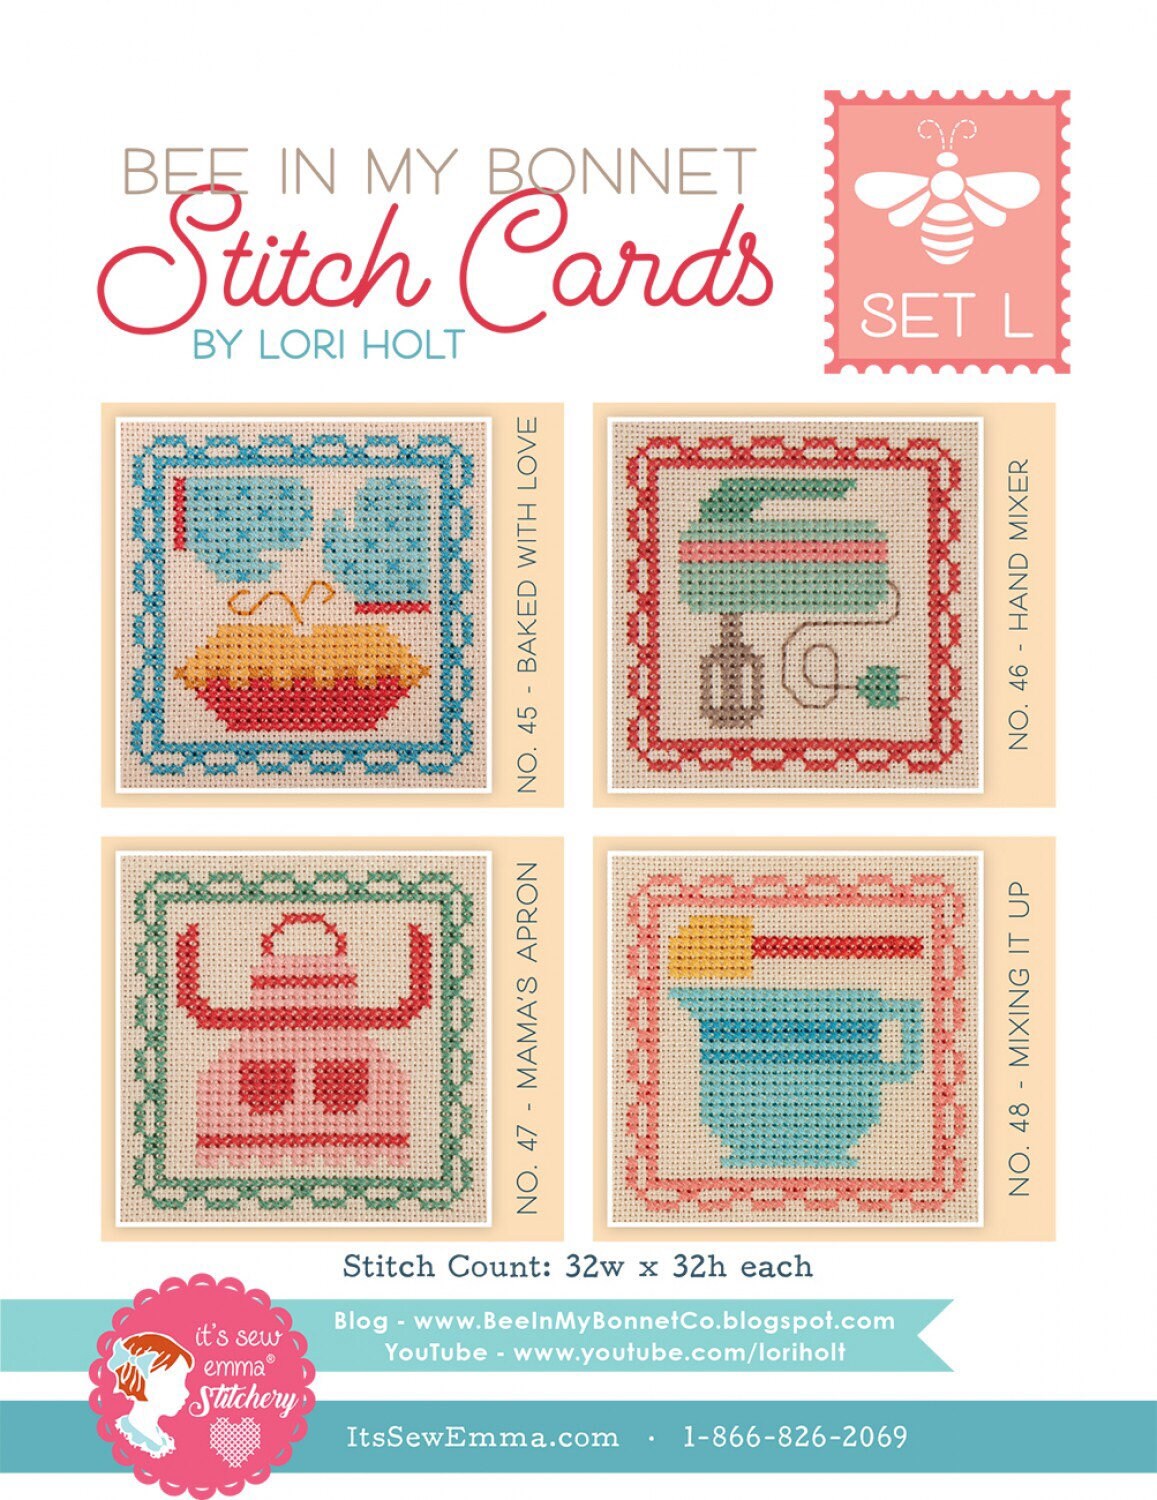 Stitch Cards Set L - Cross Stitch Pattern - It’s Sew Emma - Lori Holt - Bee In My Bonnet